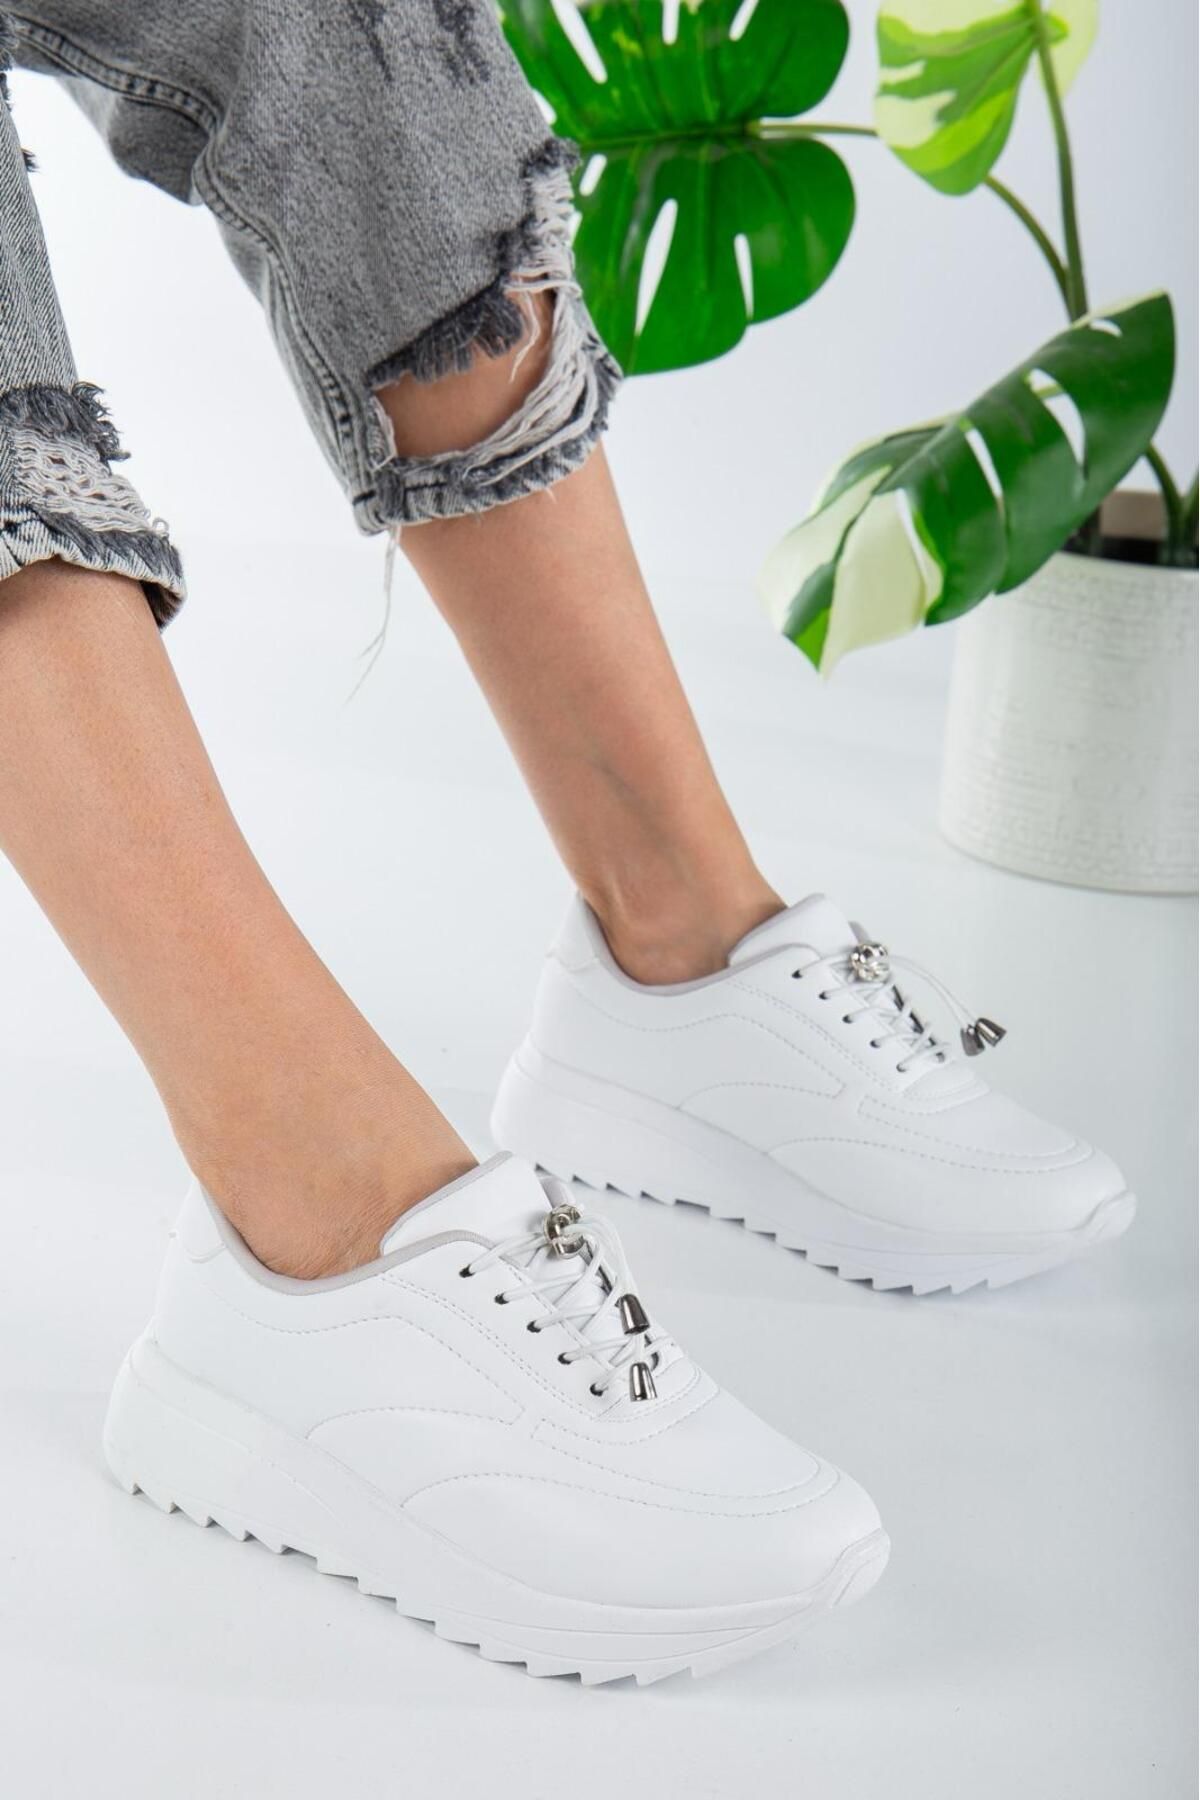 welasca Kadın Beyaz Rahat Şık Günlük Spor  Sneaker Ayakkabı